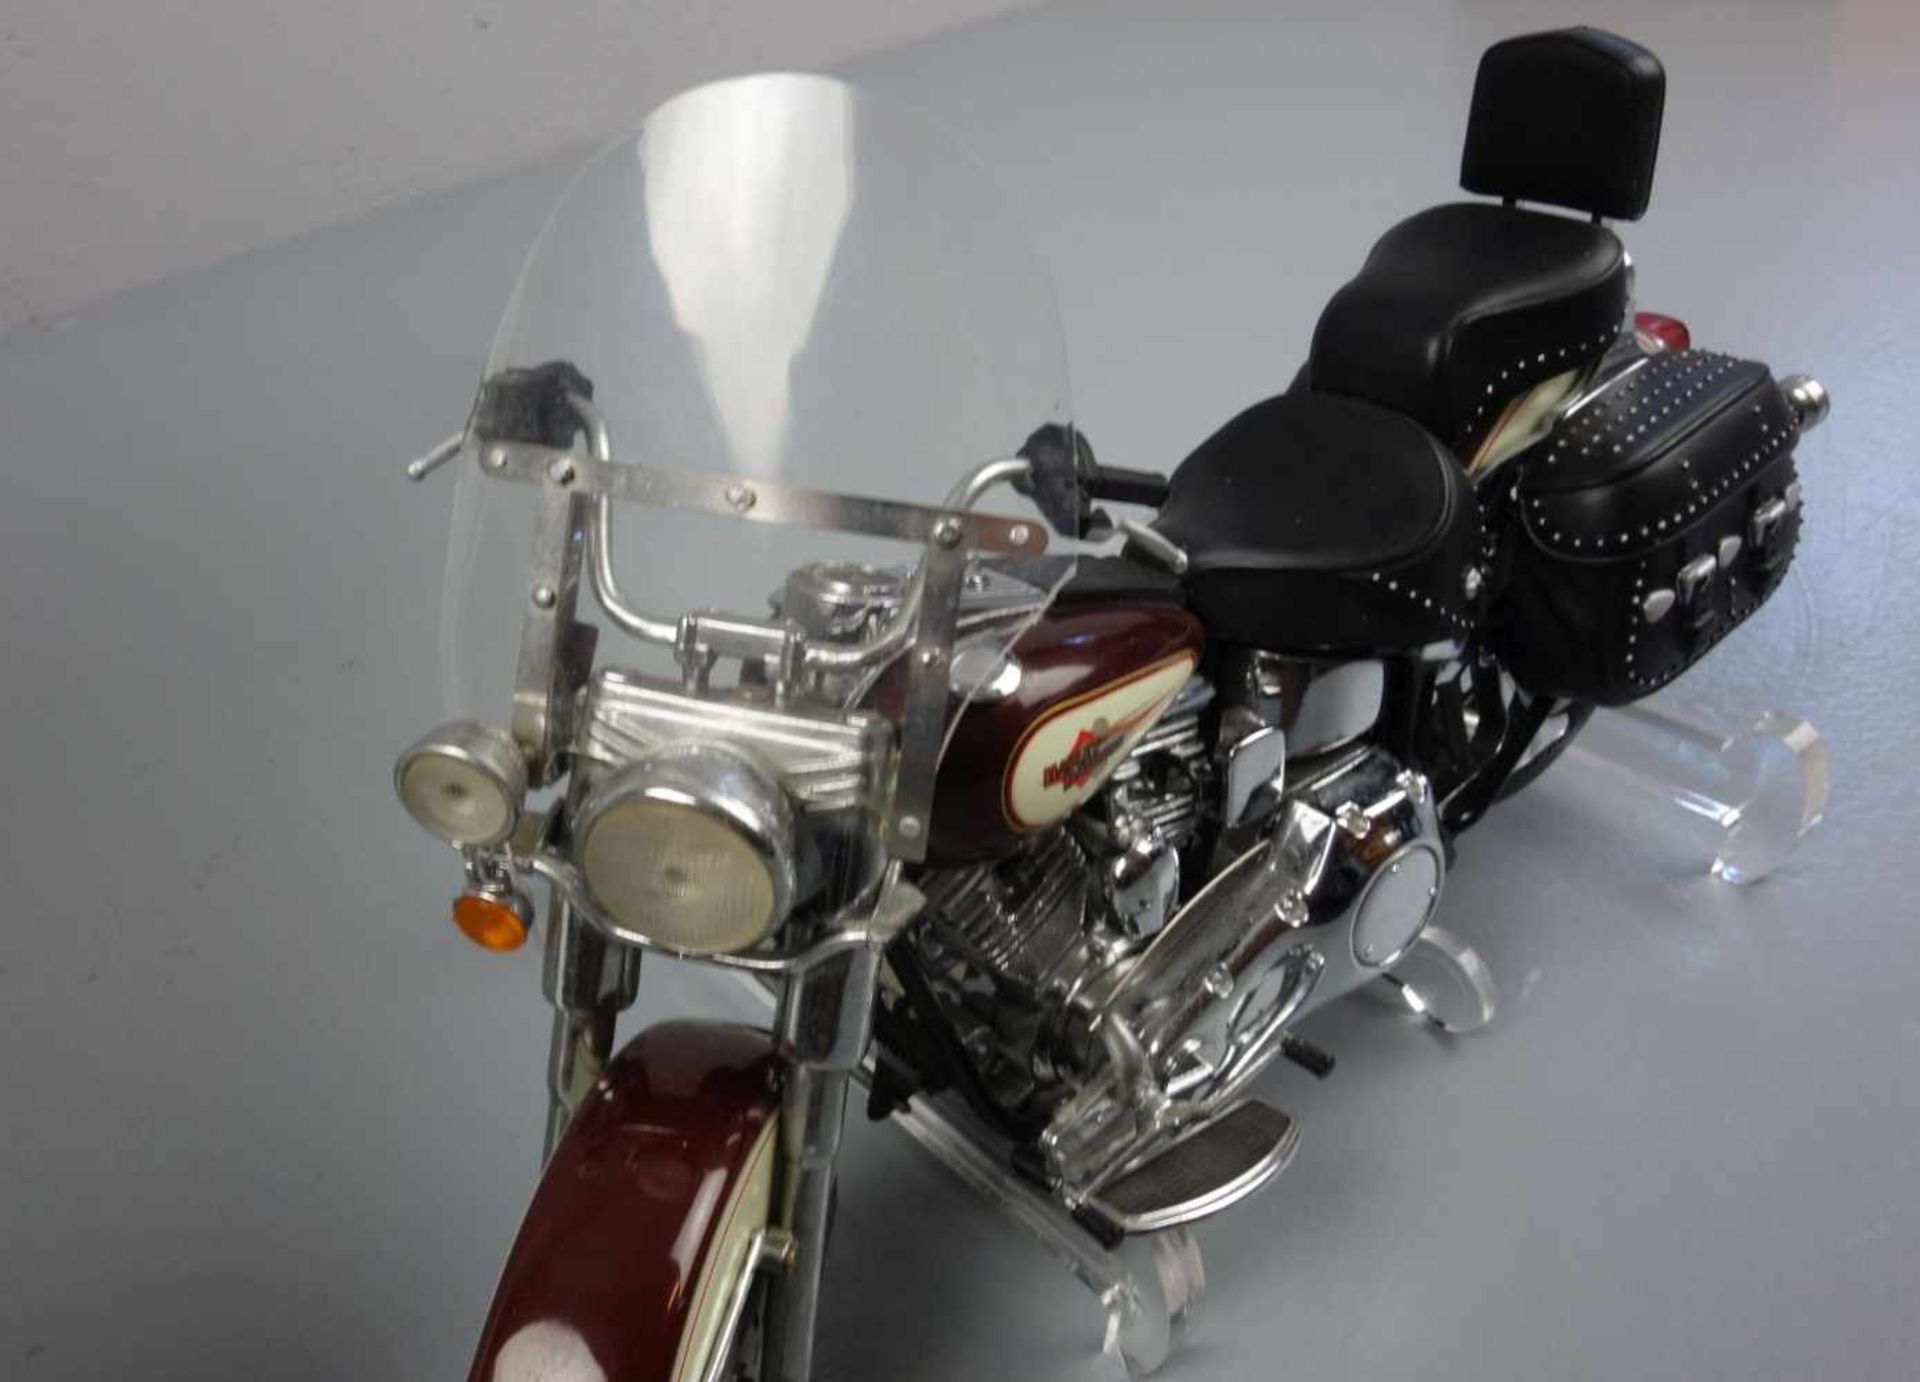 HARLEY DAVIDSON - MOTORRAD - MODELL: Franklin Mint Precision Models "Harley Davidson Heritage - Image 4 of 4